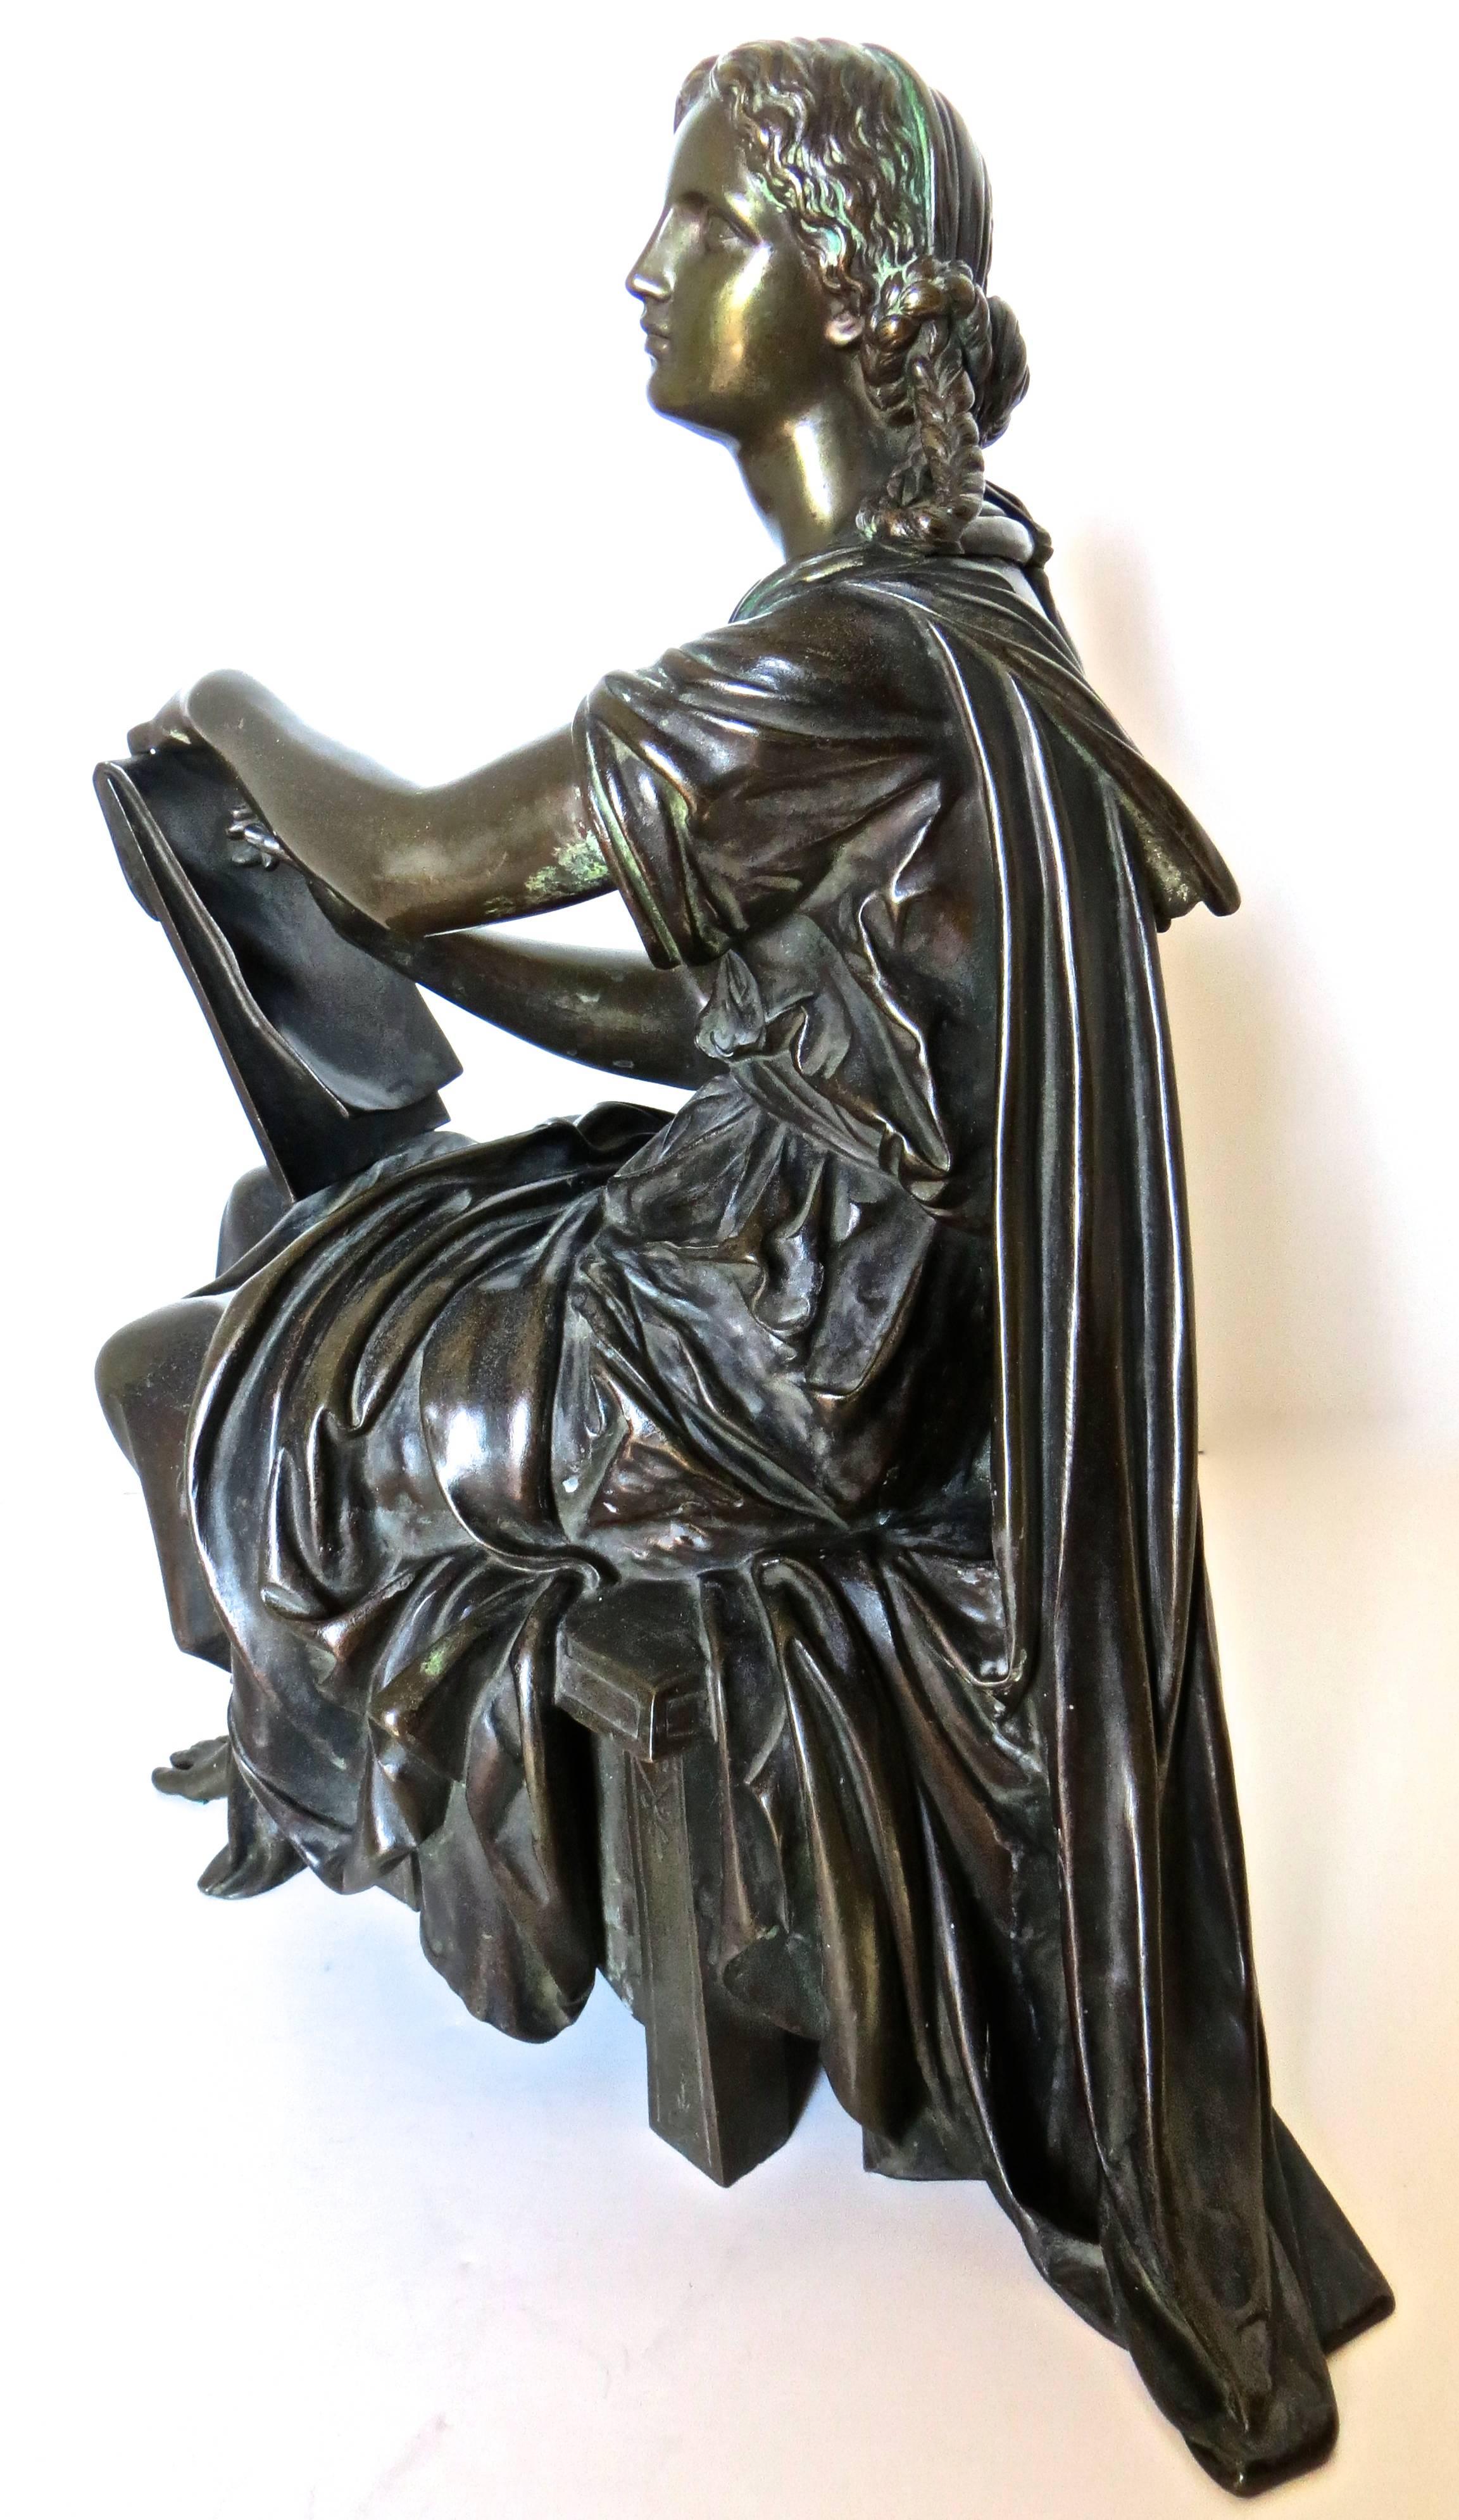 D'origine française, cette figurine en bronze du milieu ou de la fin du XIXe siècle a été réalisée par la prolifique famille d'artistes bronziers français 